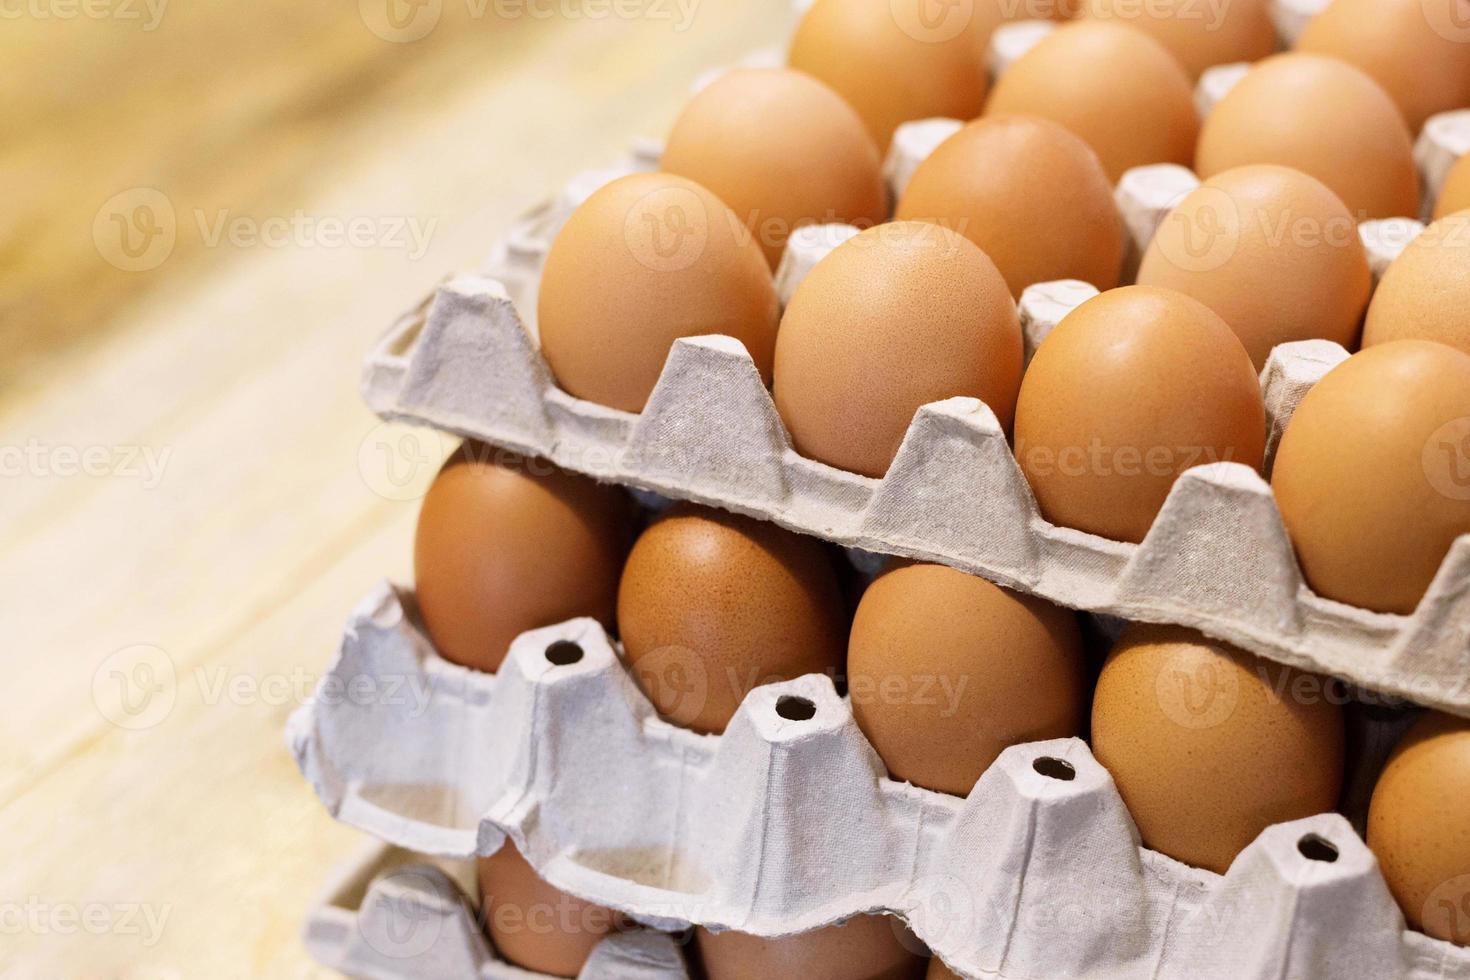 fermez les œufs entiers dans la boîte. oeuf de poule beaucoup. mise au point douce photo